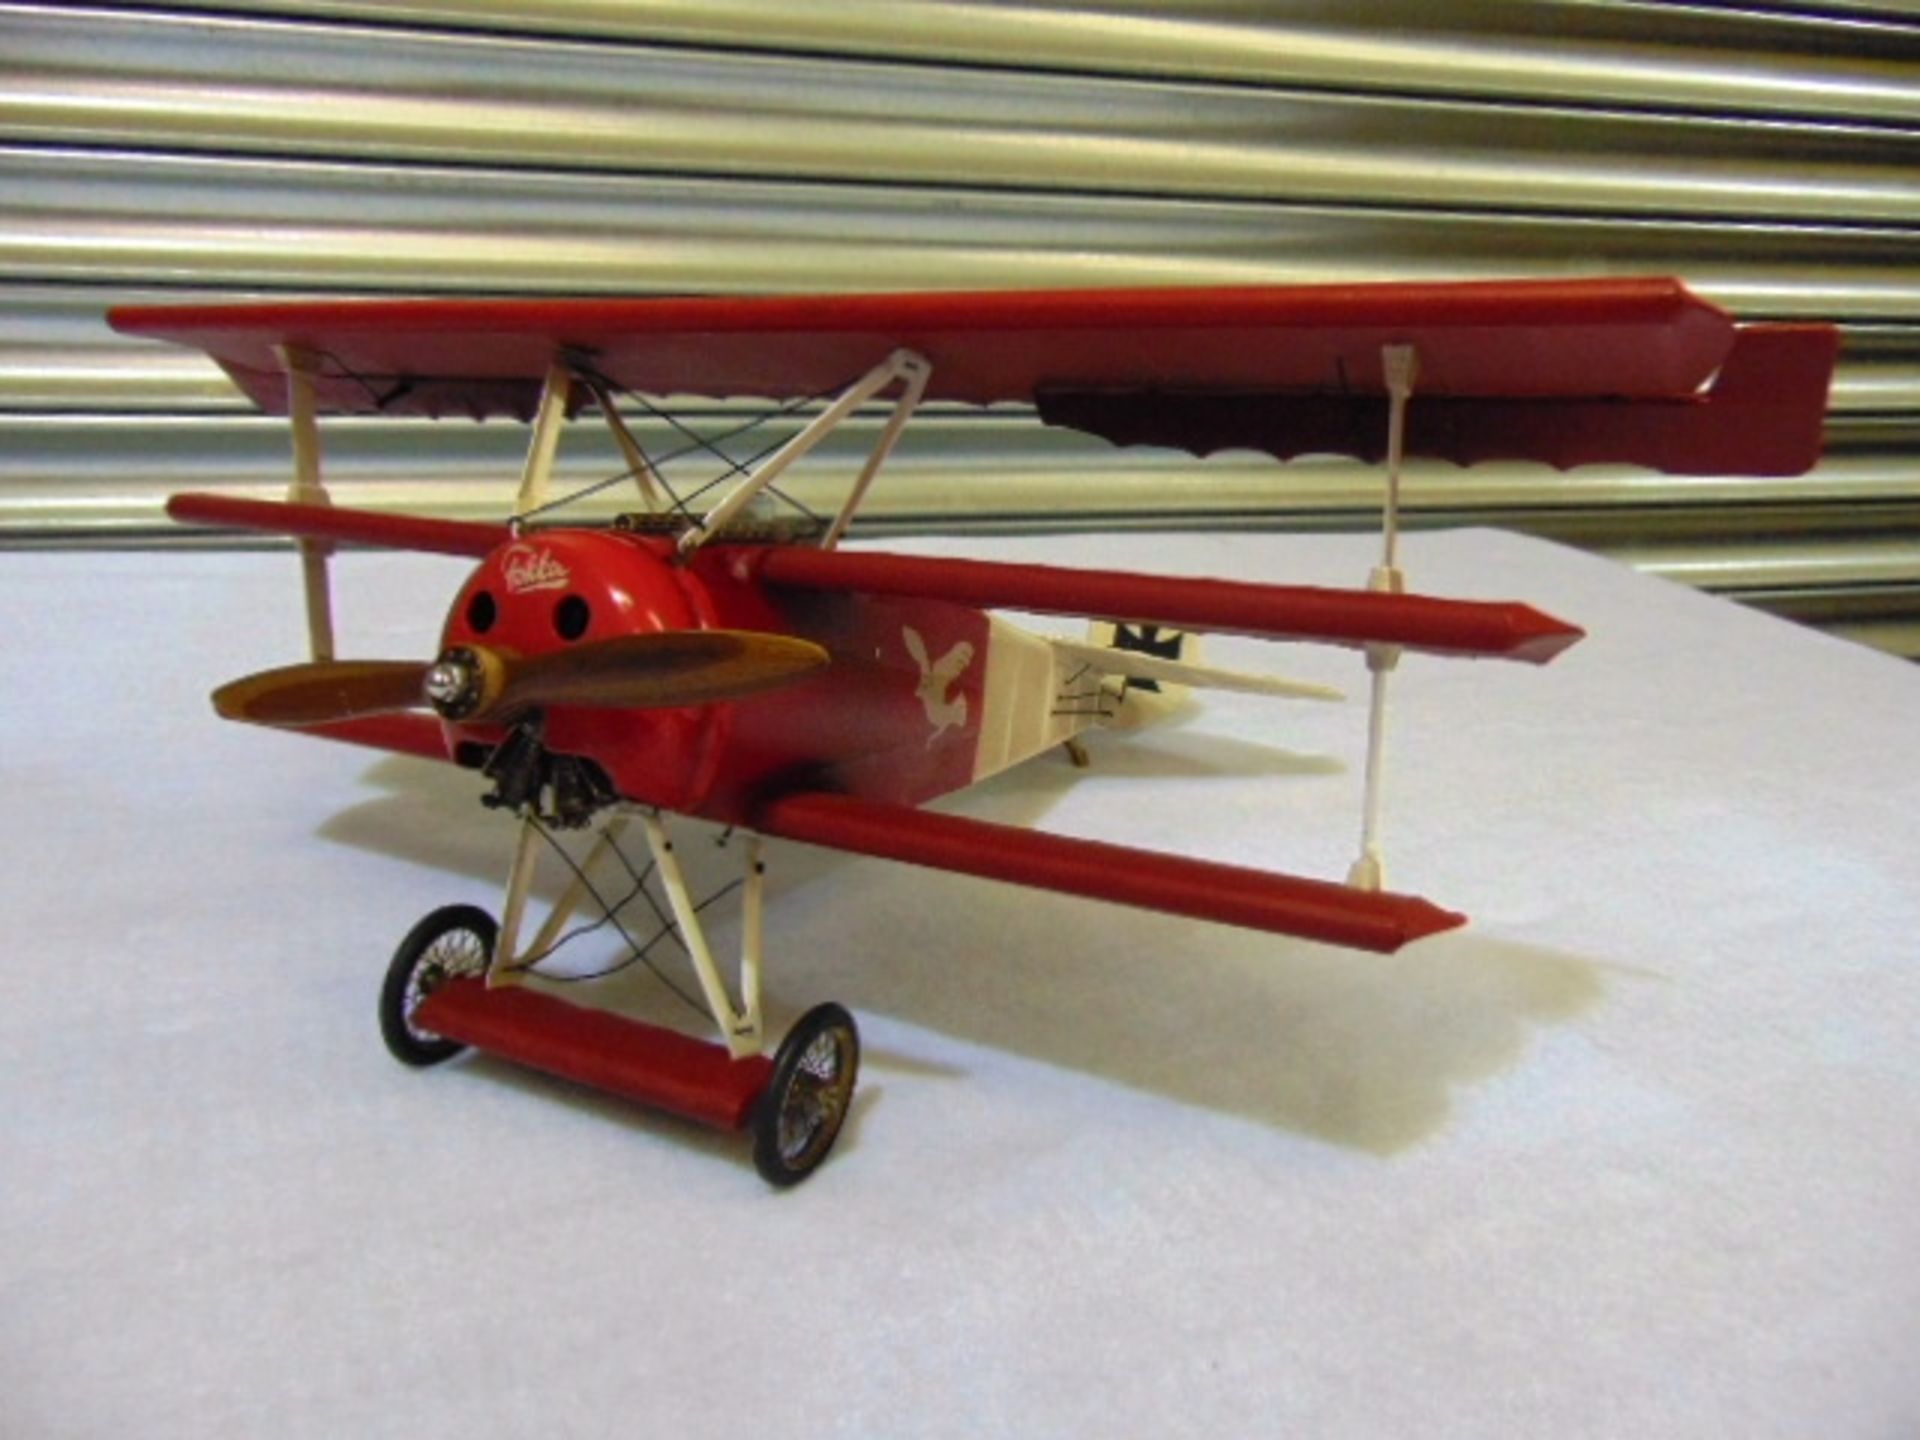 Legendary Red Baron's Fokker Triplane Detailed Model